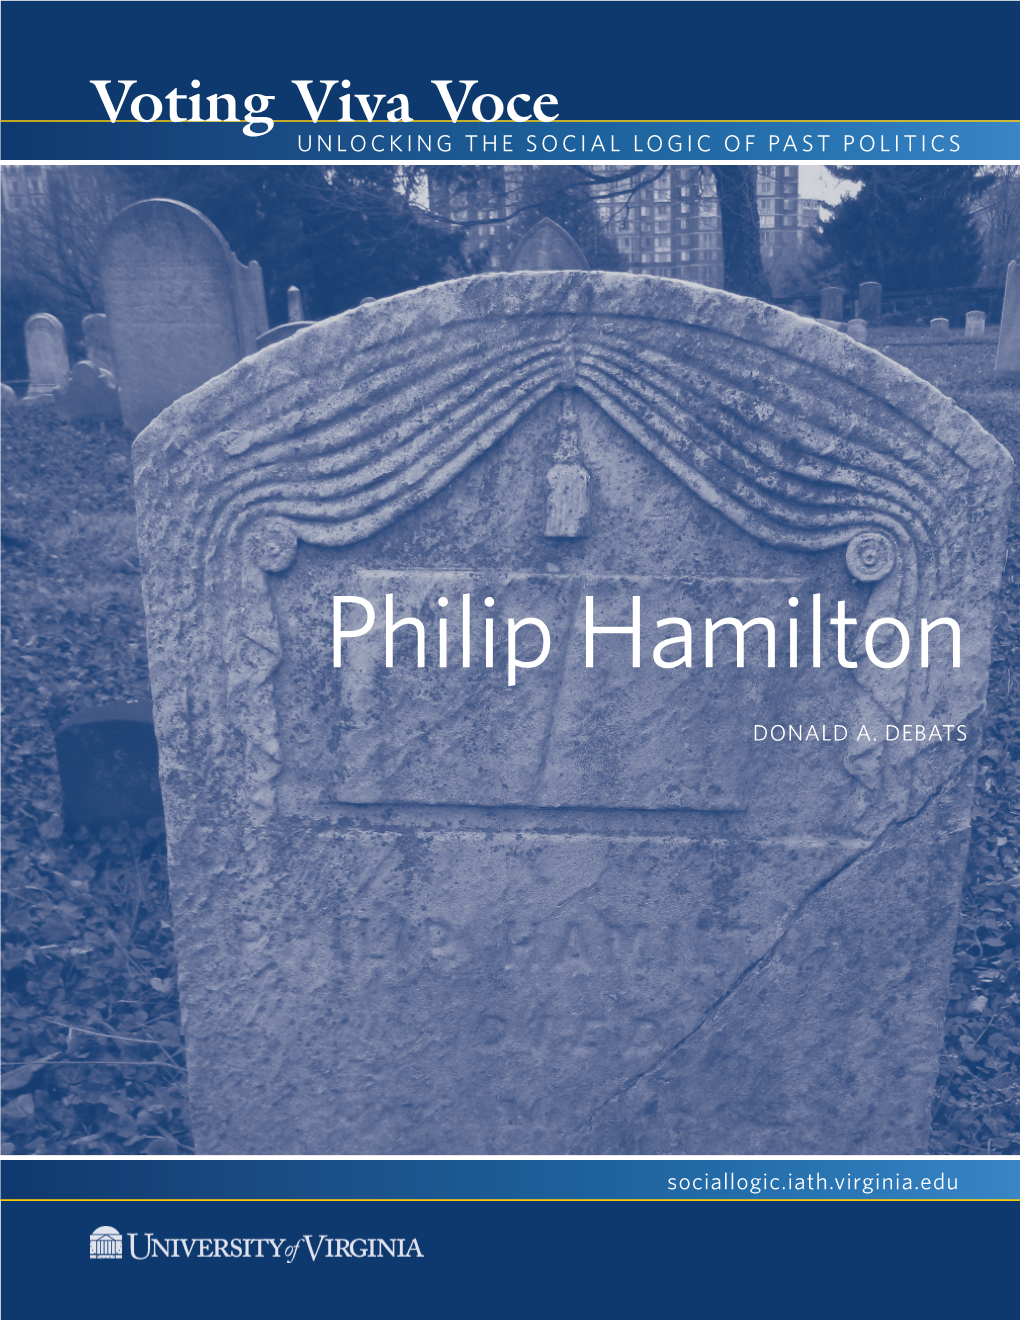 Philip Hamilton